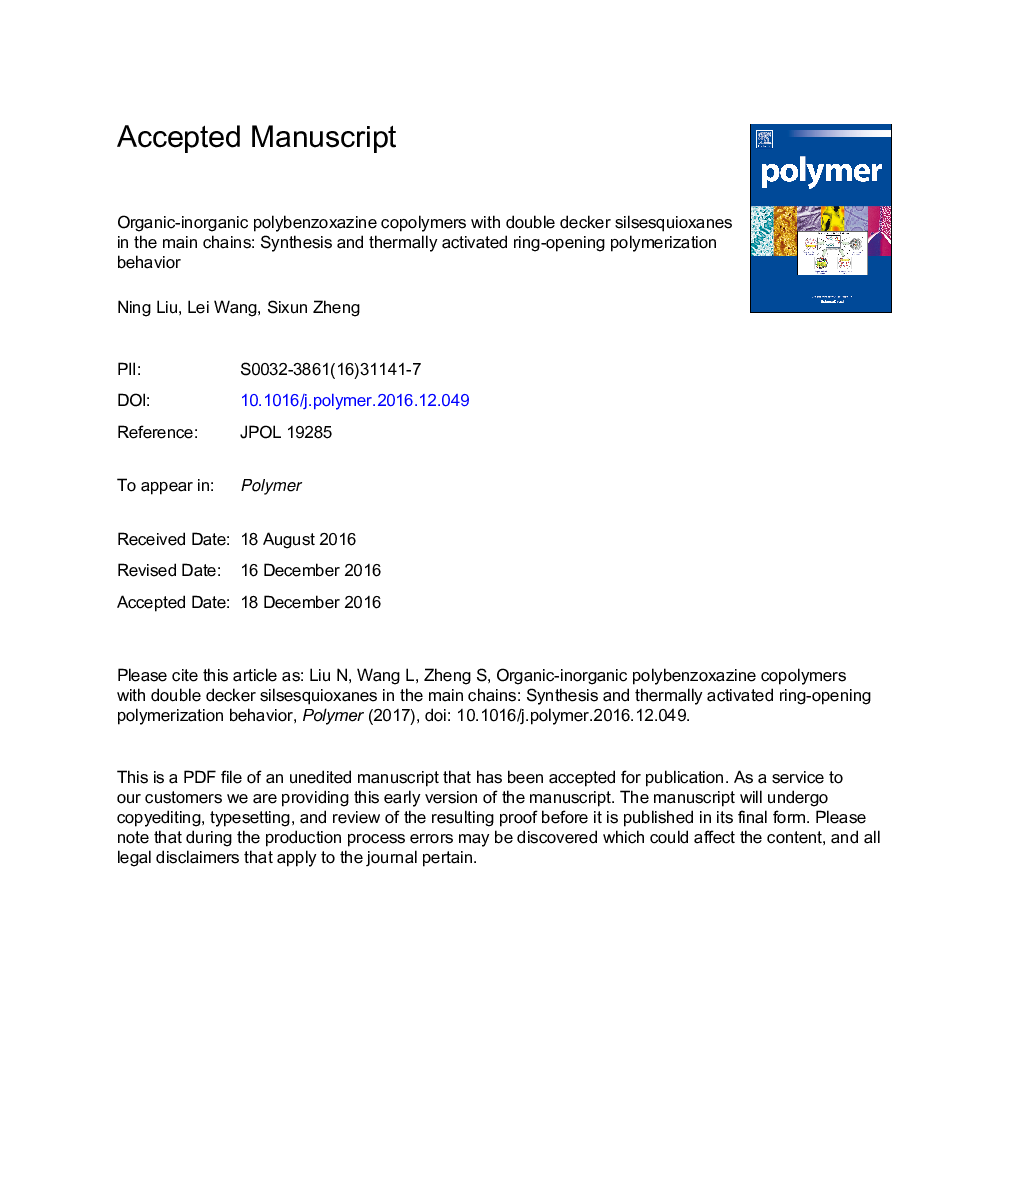 کوپلیمرهای پلی اتیلن زعفران با پلیمرهای زیست سازگار با سیلسکیوکسانهای دو طبقه در زنجیره اصلی: رفتار سینتیک و پلیمریزاسیون باز شدن حلقه از طریق حرارتی 